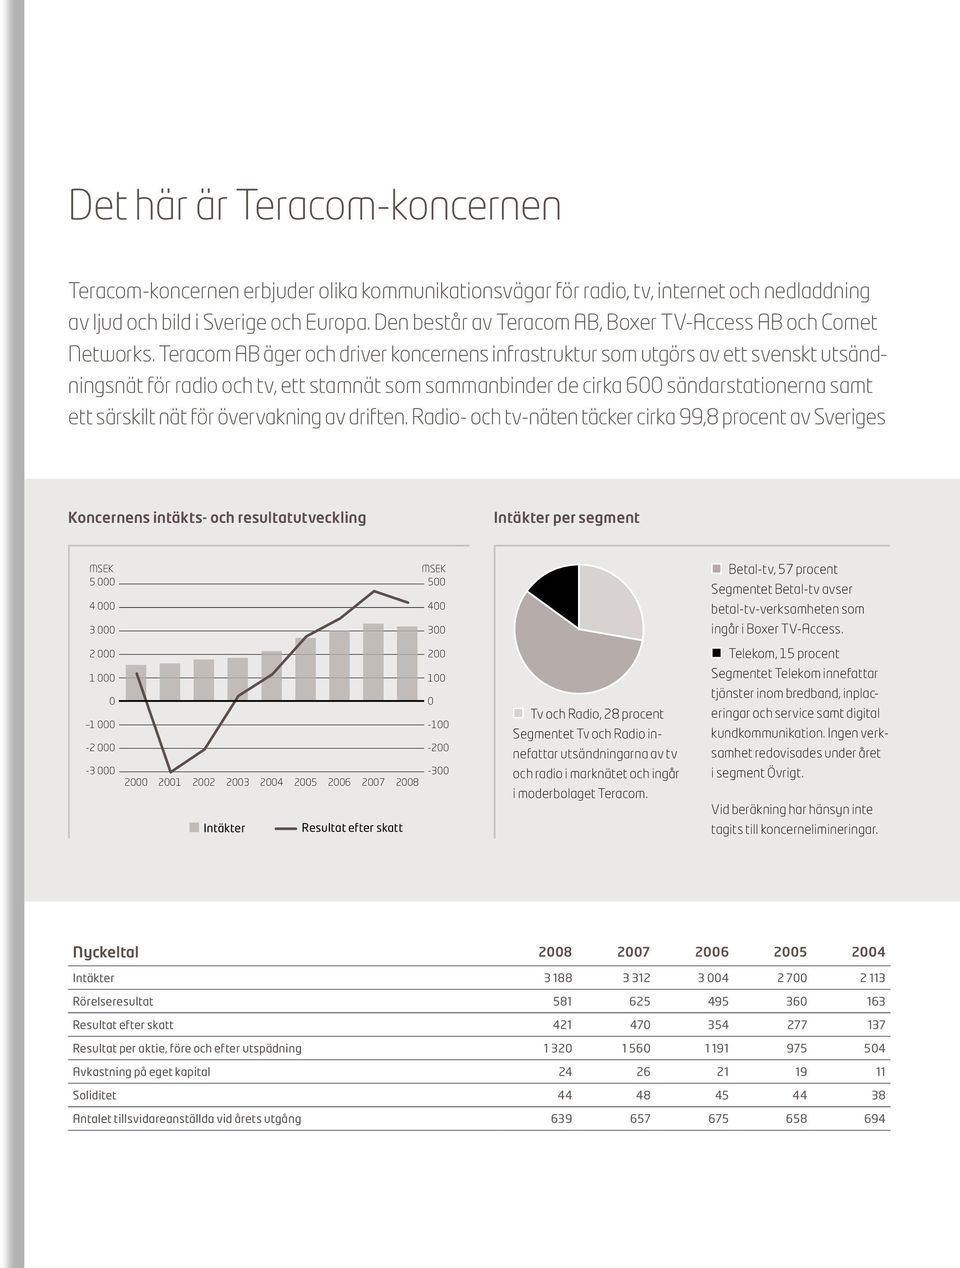 Teracom AB äger och driver koncernens infrastruktur som utgörs av ett svenskt utsänd - ningsnät för radio och tv, ett stamnät som sammanbinder de cirka 600 sändarstationerna samt ett särskilt nät för